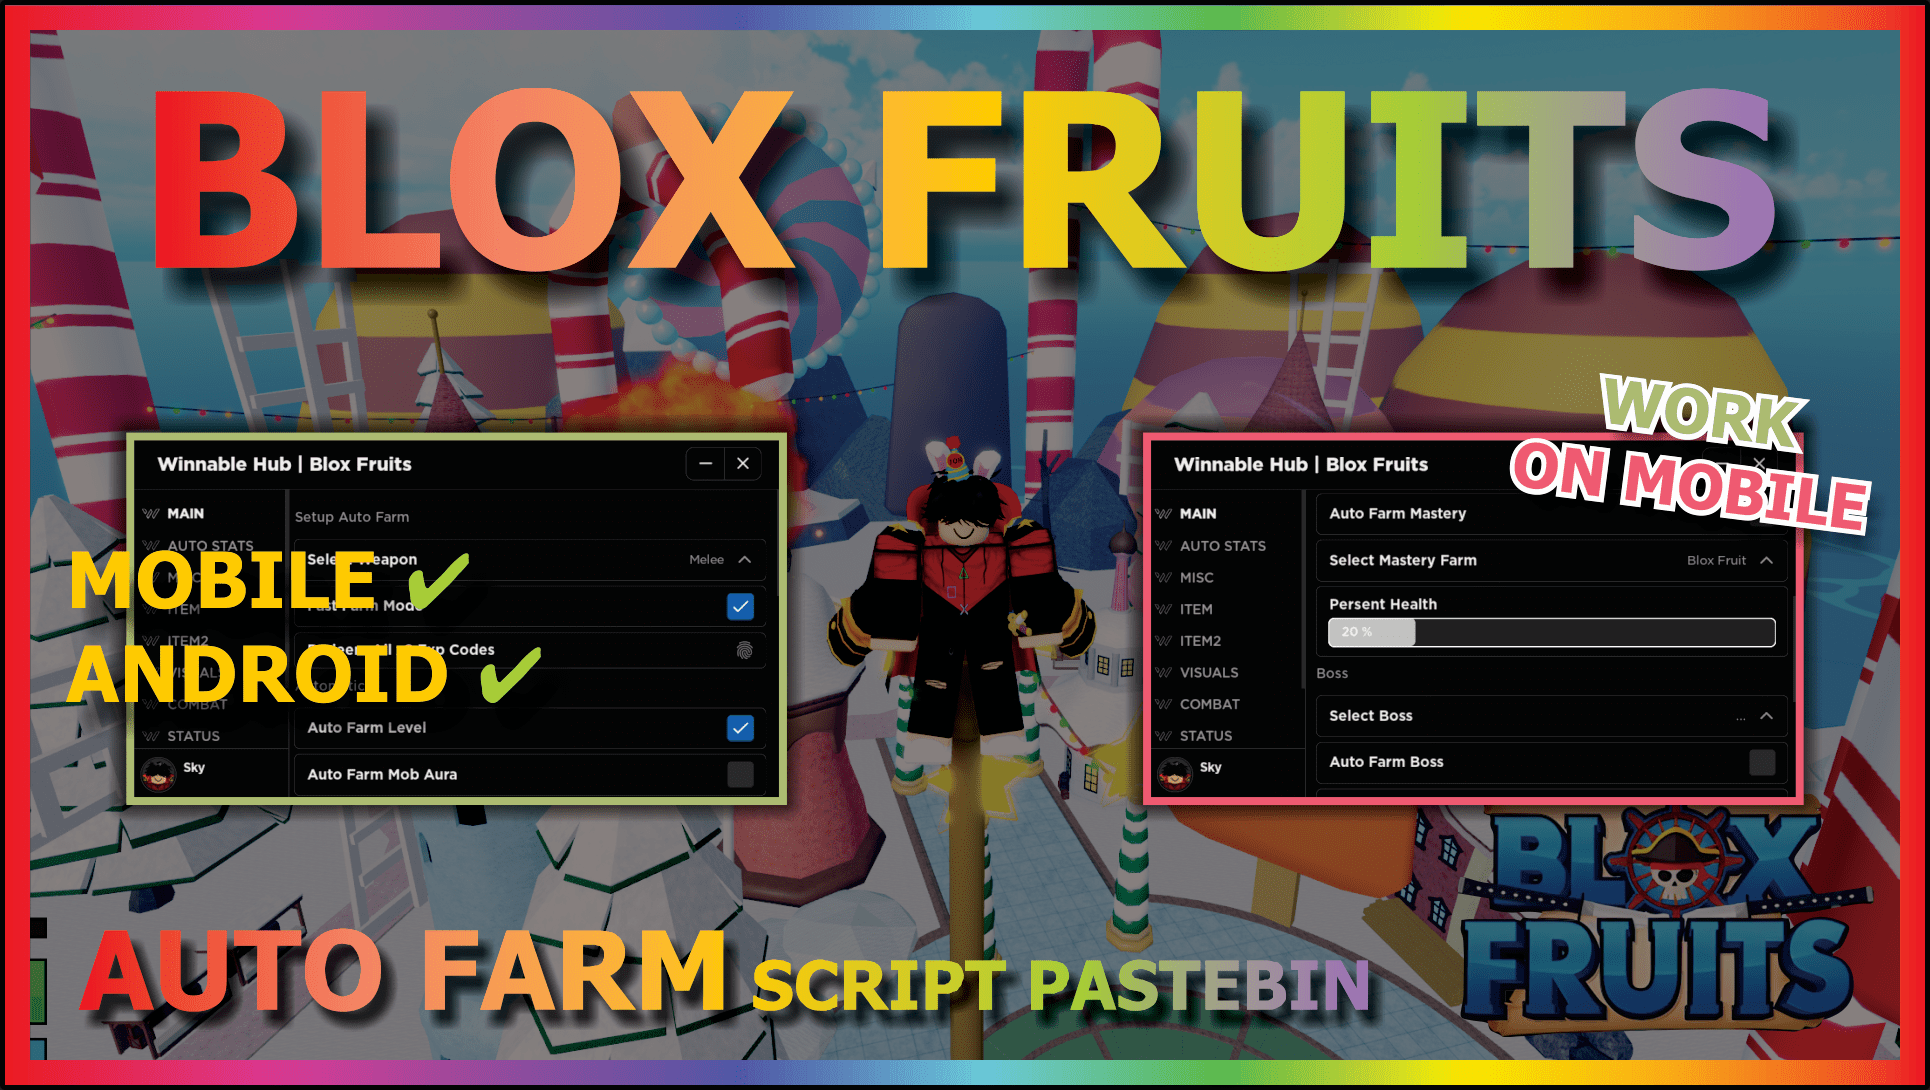 blox fruit script pastebin 2023 – ScriptPastebin